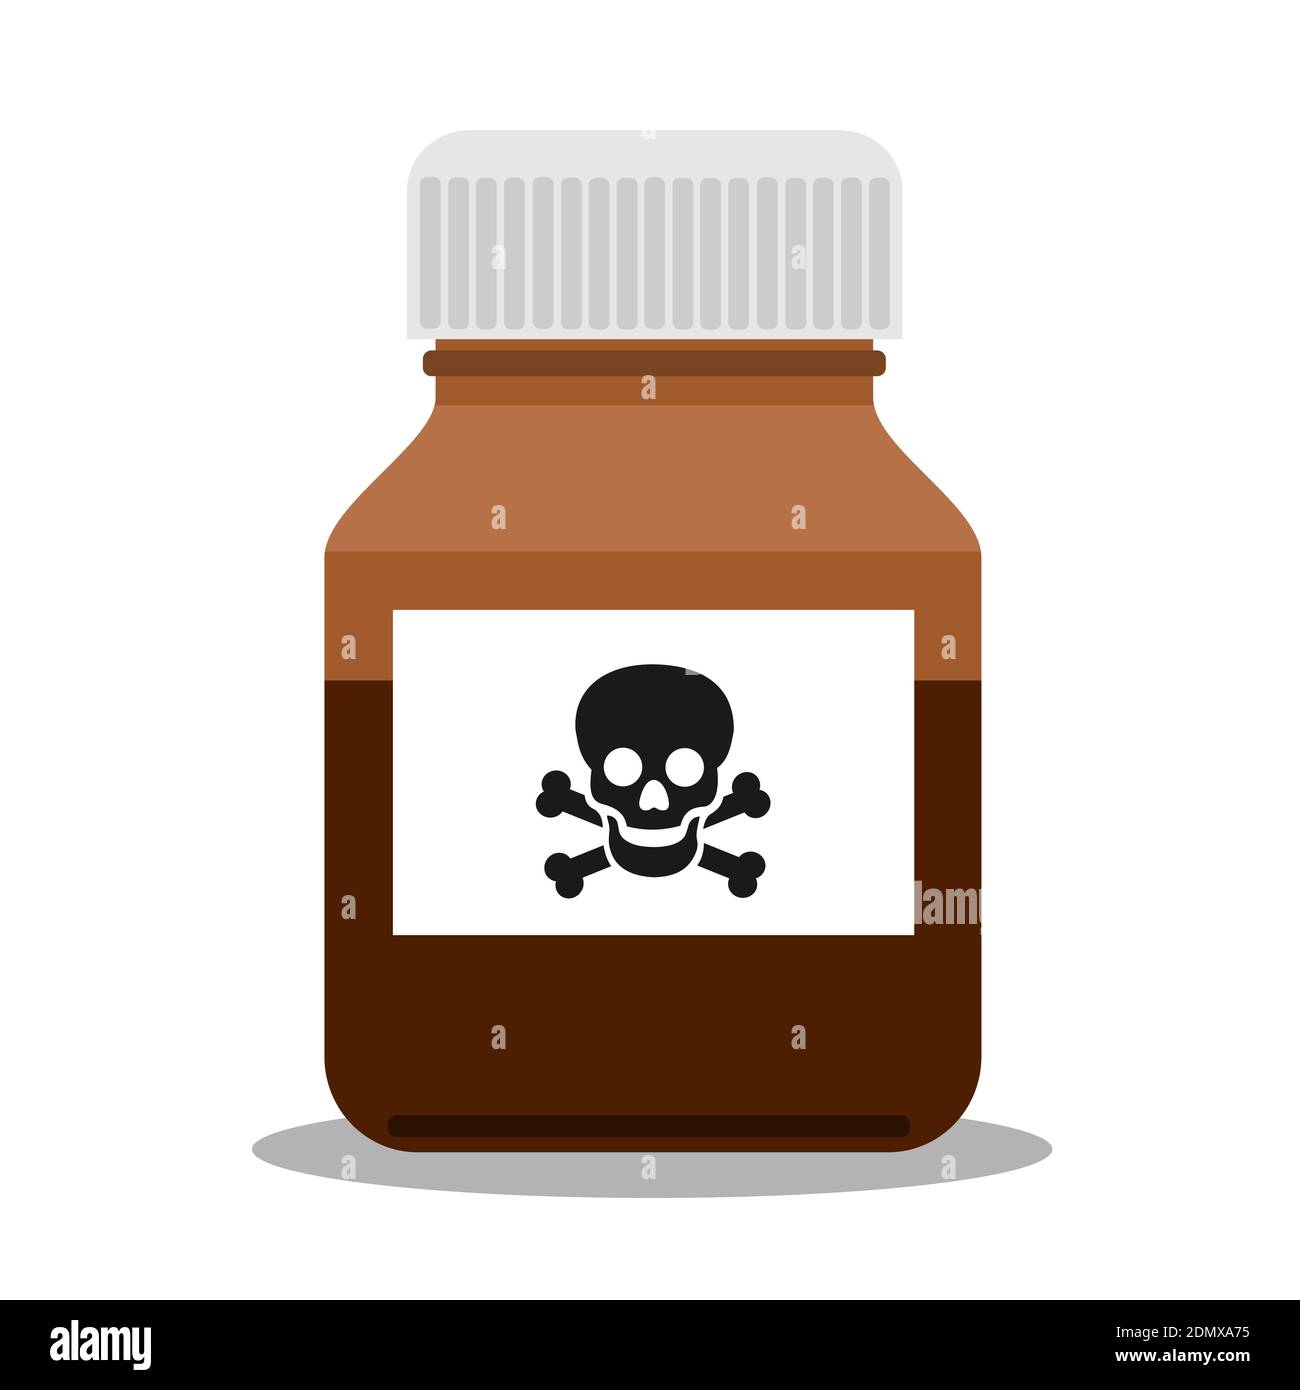 La bouteille, le pot et le contenant pour la madicine ont une étiquette d'avertissement - danger de surdosage par la drogue, la médecine, la pilule et le poison toxique. Illustration vectorielle Banque D'Images